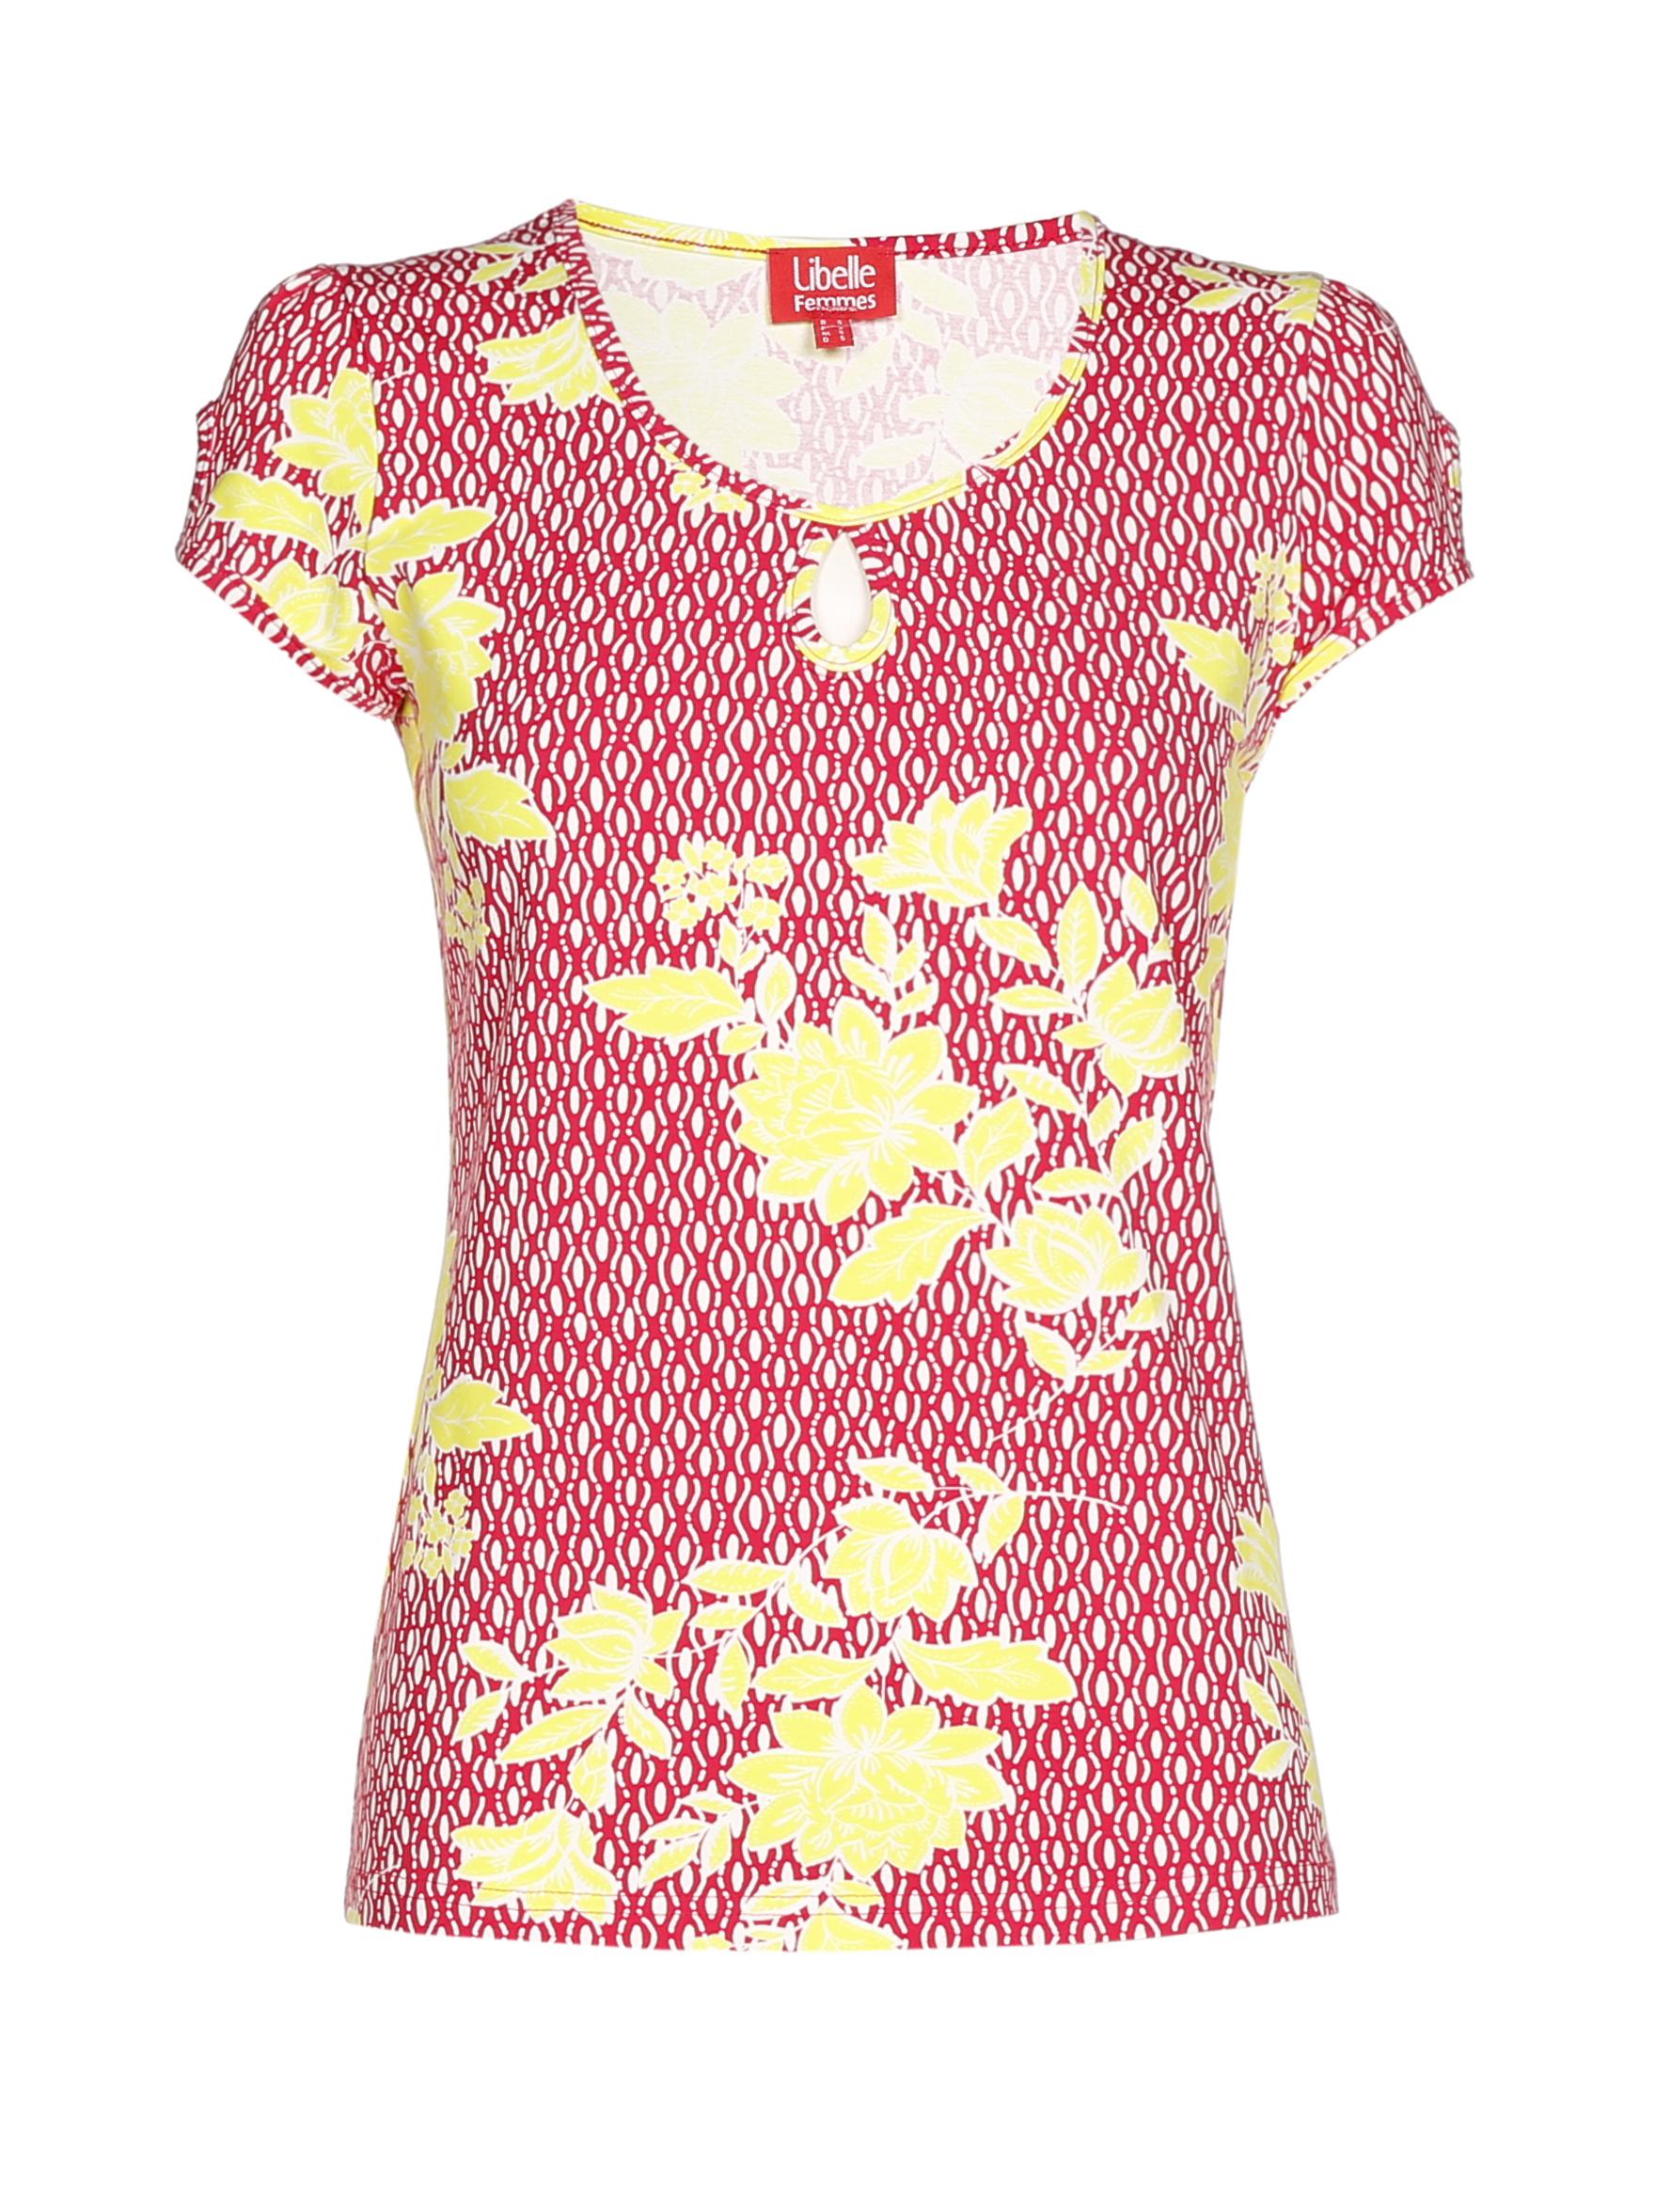 Tshirt met bloemenprint - Libelle samen met e5 - € 24,95